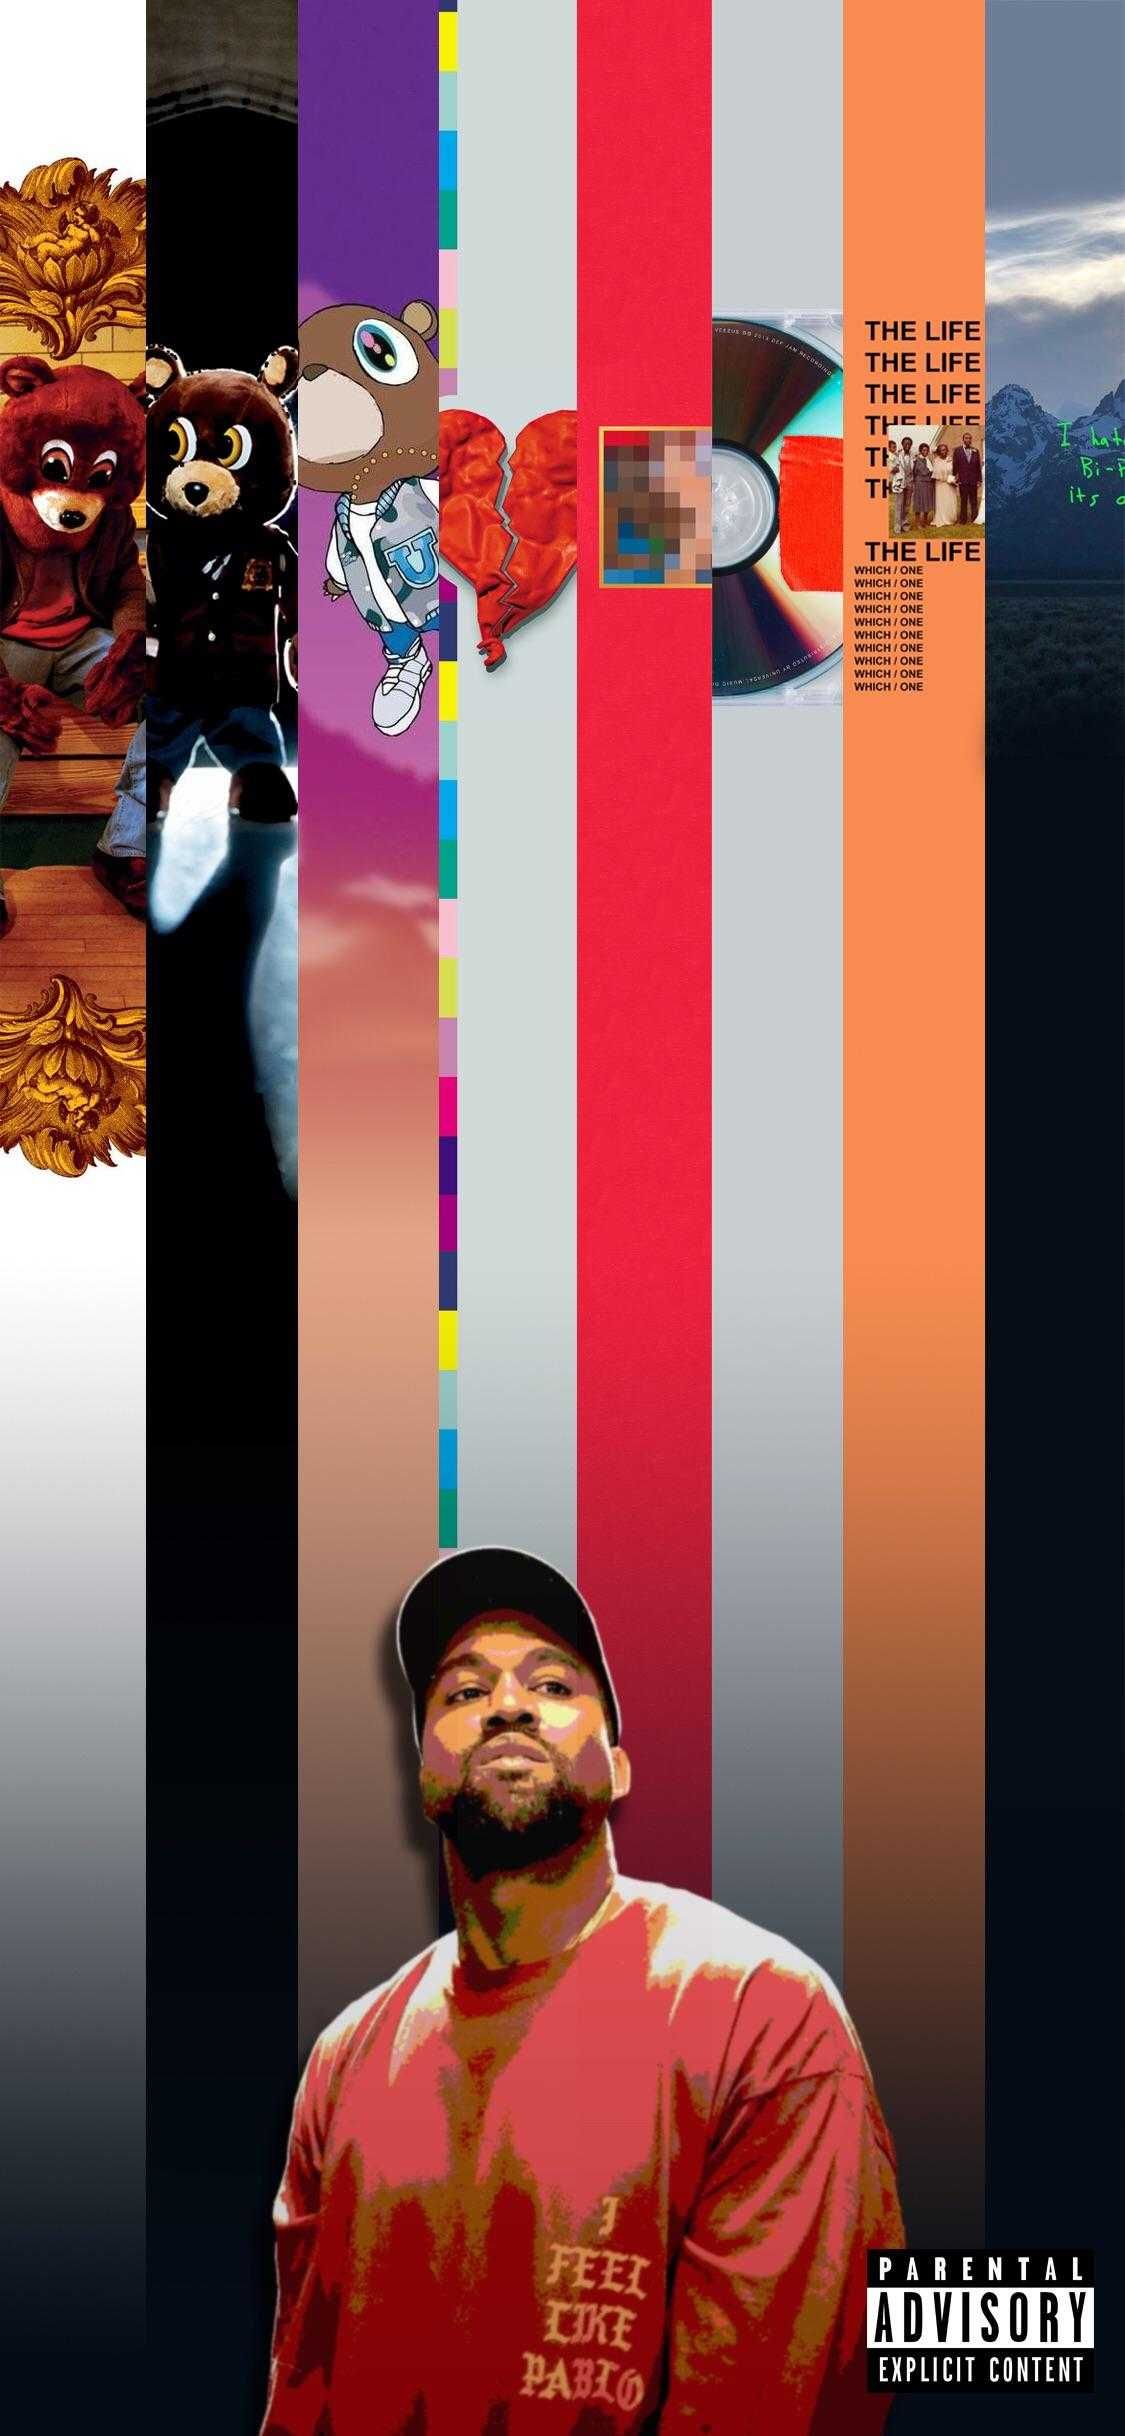 Kanye West Wallpaper